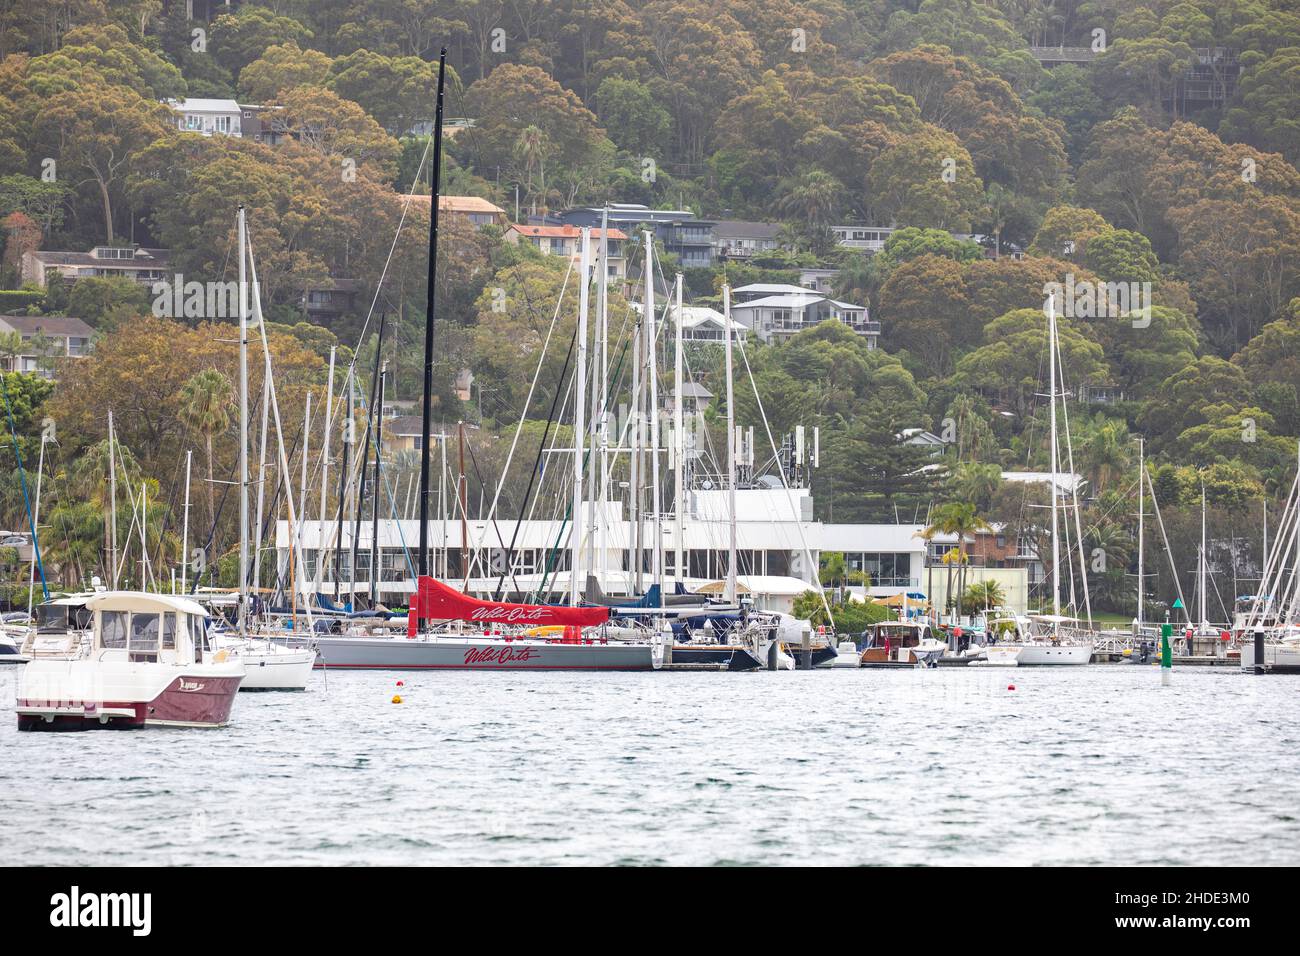 Wild Oats x voilier de course au Royal prince alfred Yacht club à pittwater, Sydney, Nouvelle-Galles du Sud, Australie Banque D'Images